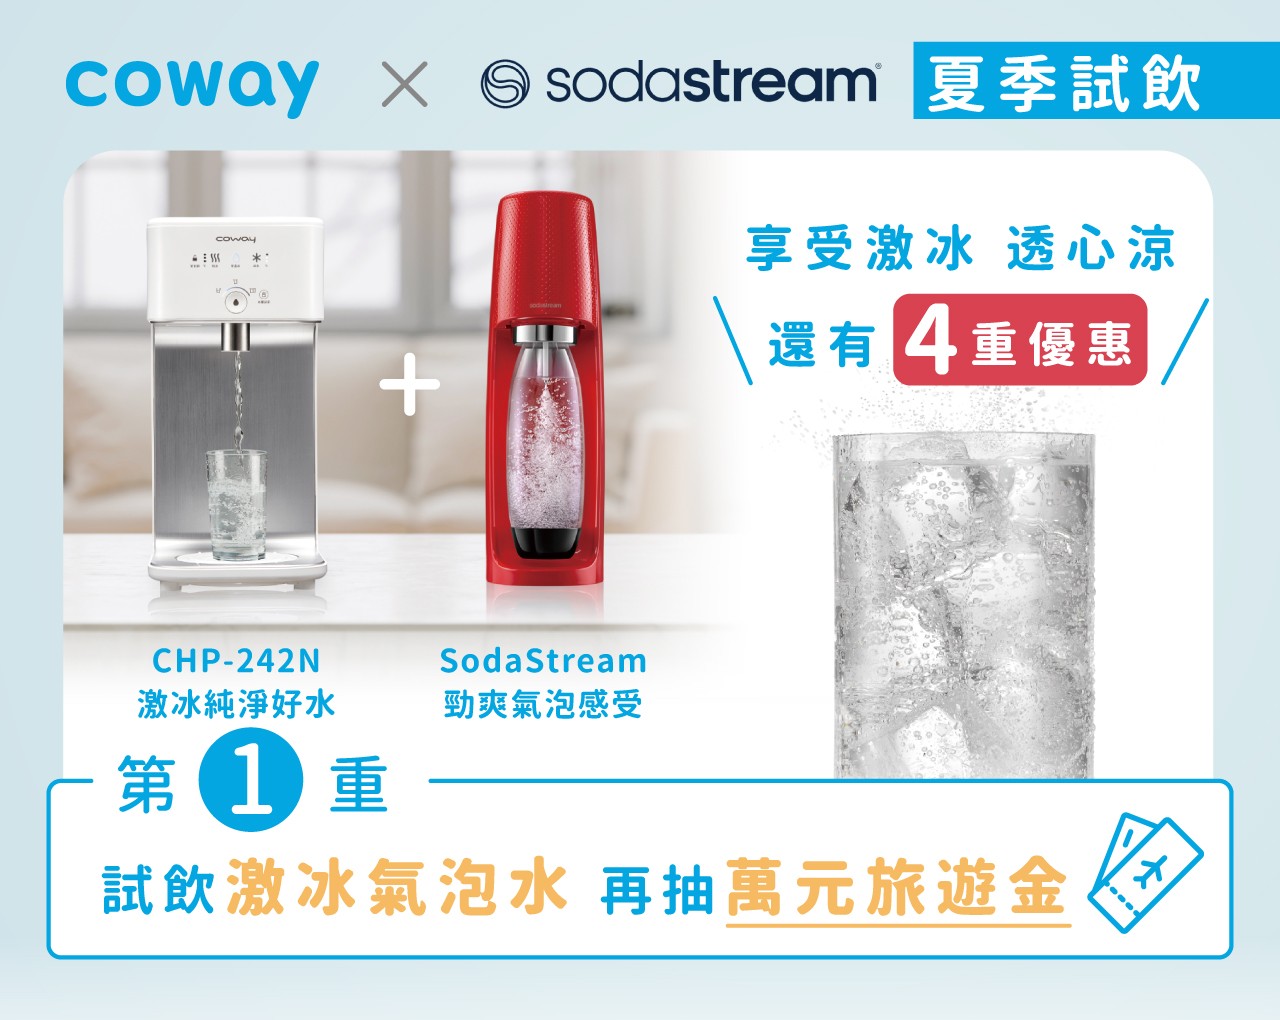 Coway x Sodastream 夏季試飲 優惠四重送